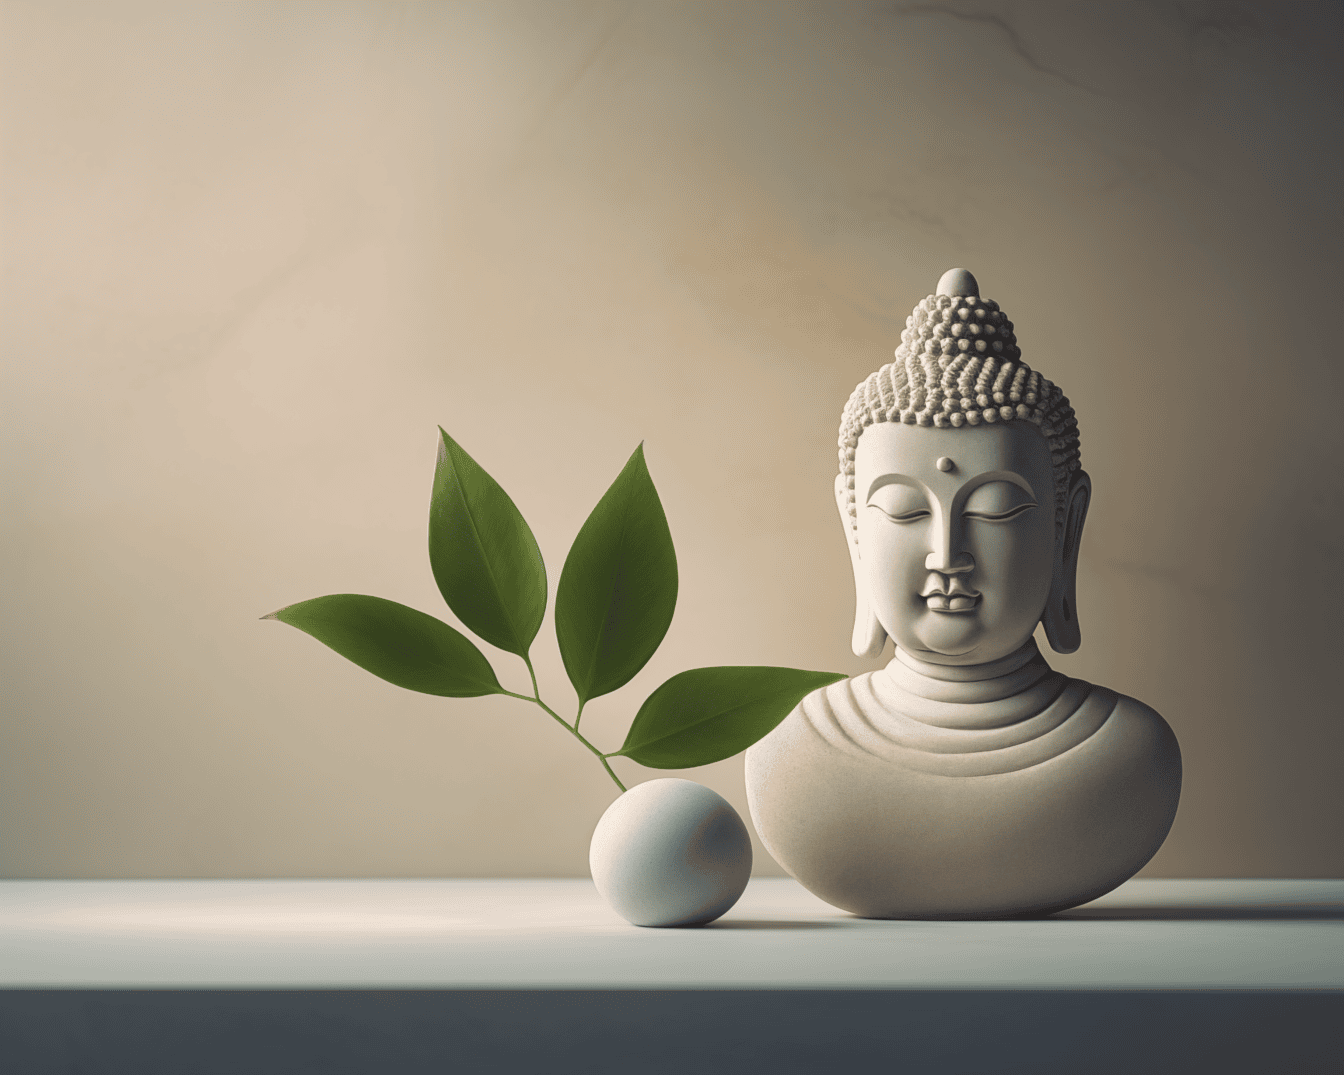 Керамічна біла статуя Будди в спокійній медитації поруч з круглим каменем з листям